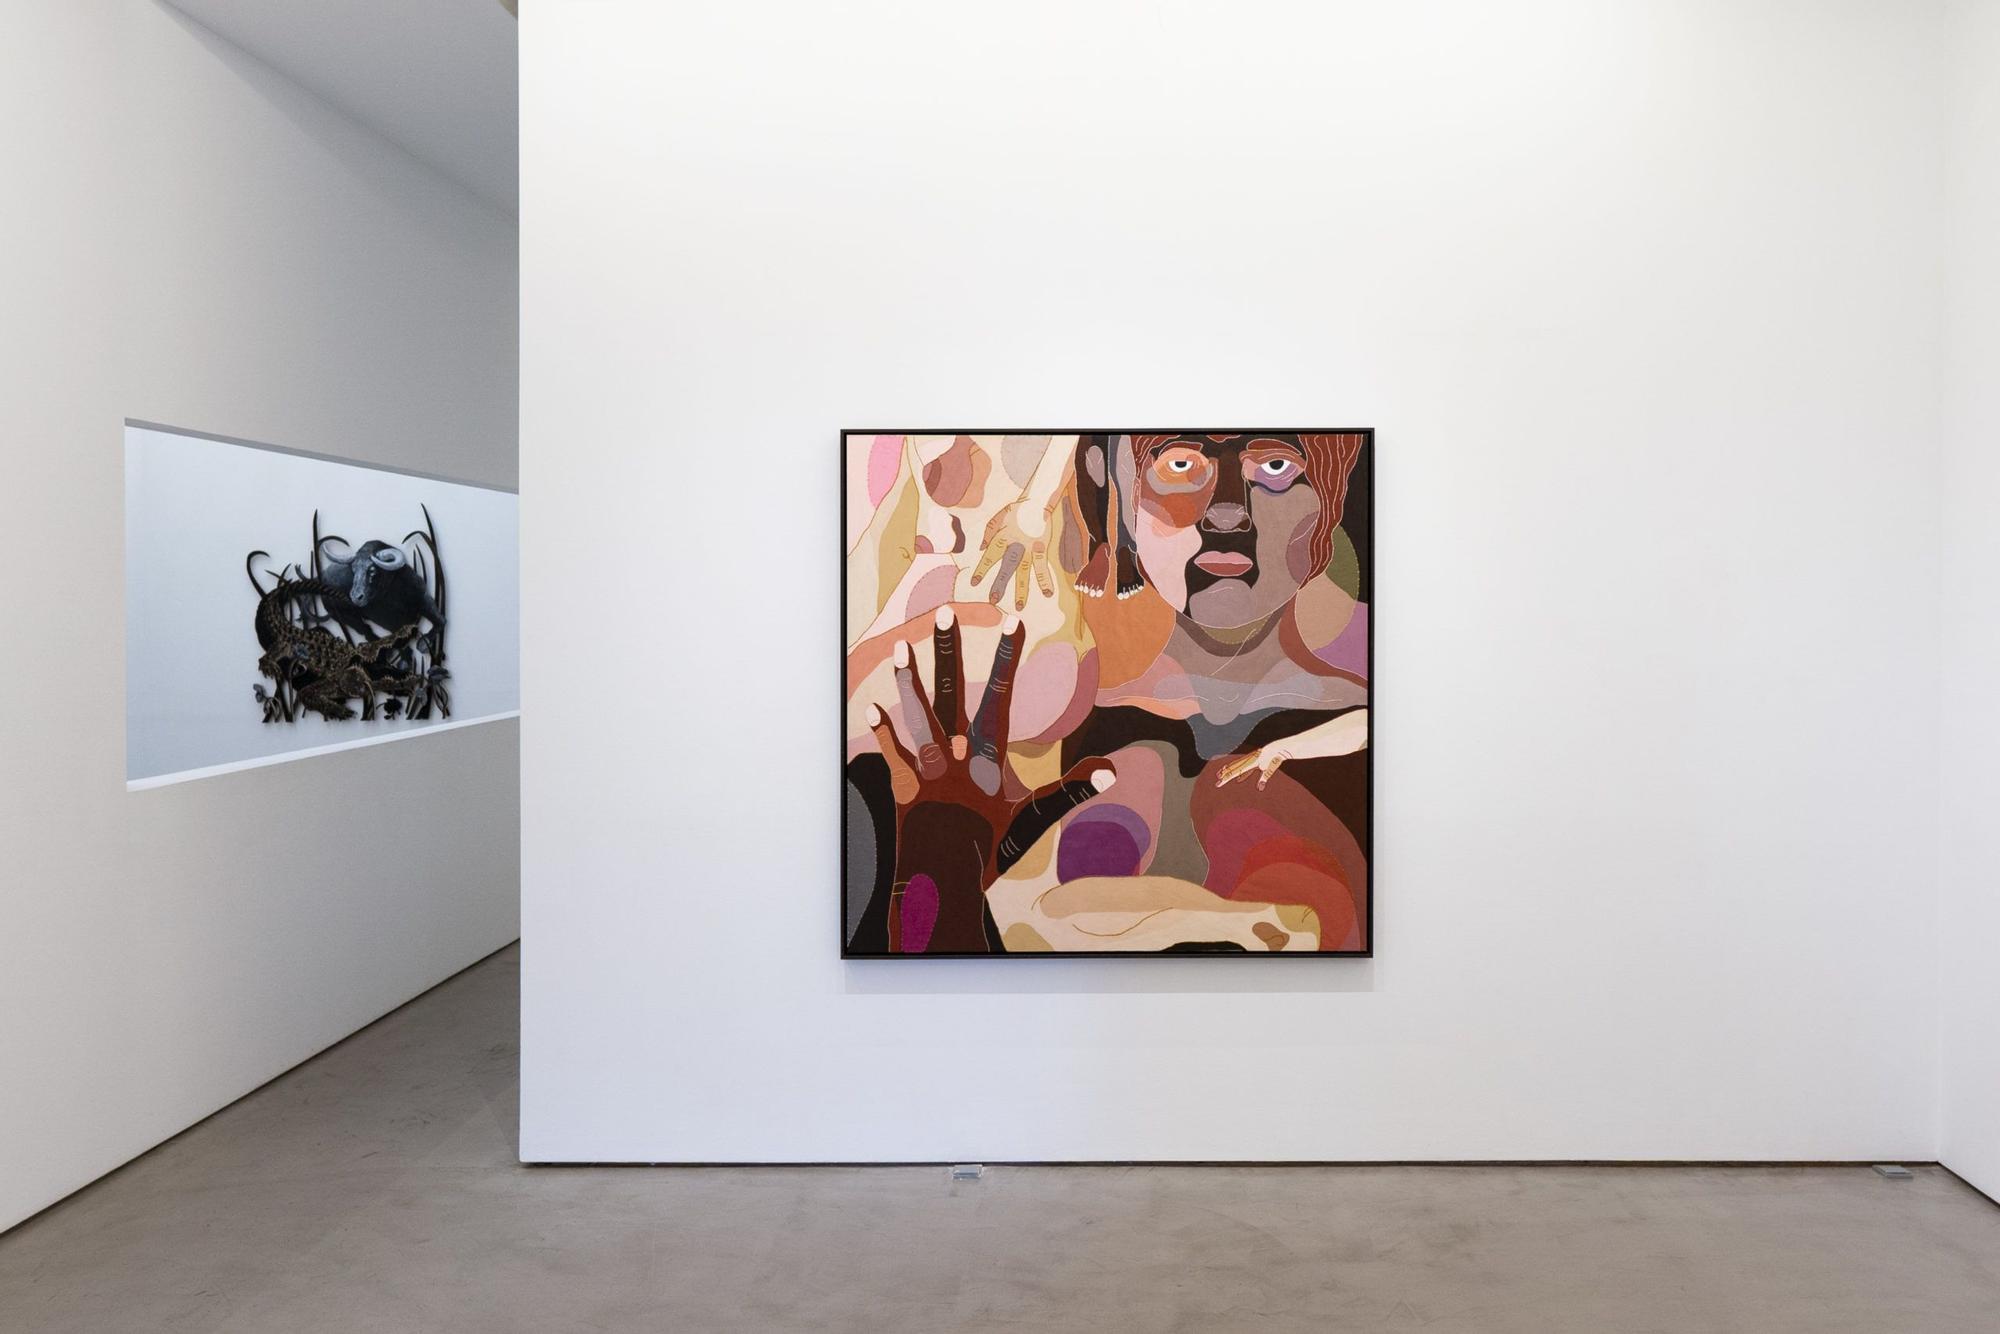 Vista de la exposición 'Selfie' en la galería Moisés Pérez Albéniz (MPA), con la obra de 'De ente et essentia VIII' (2022), de  Ela Fidalgo, en primer plano.